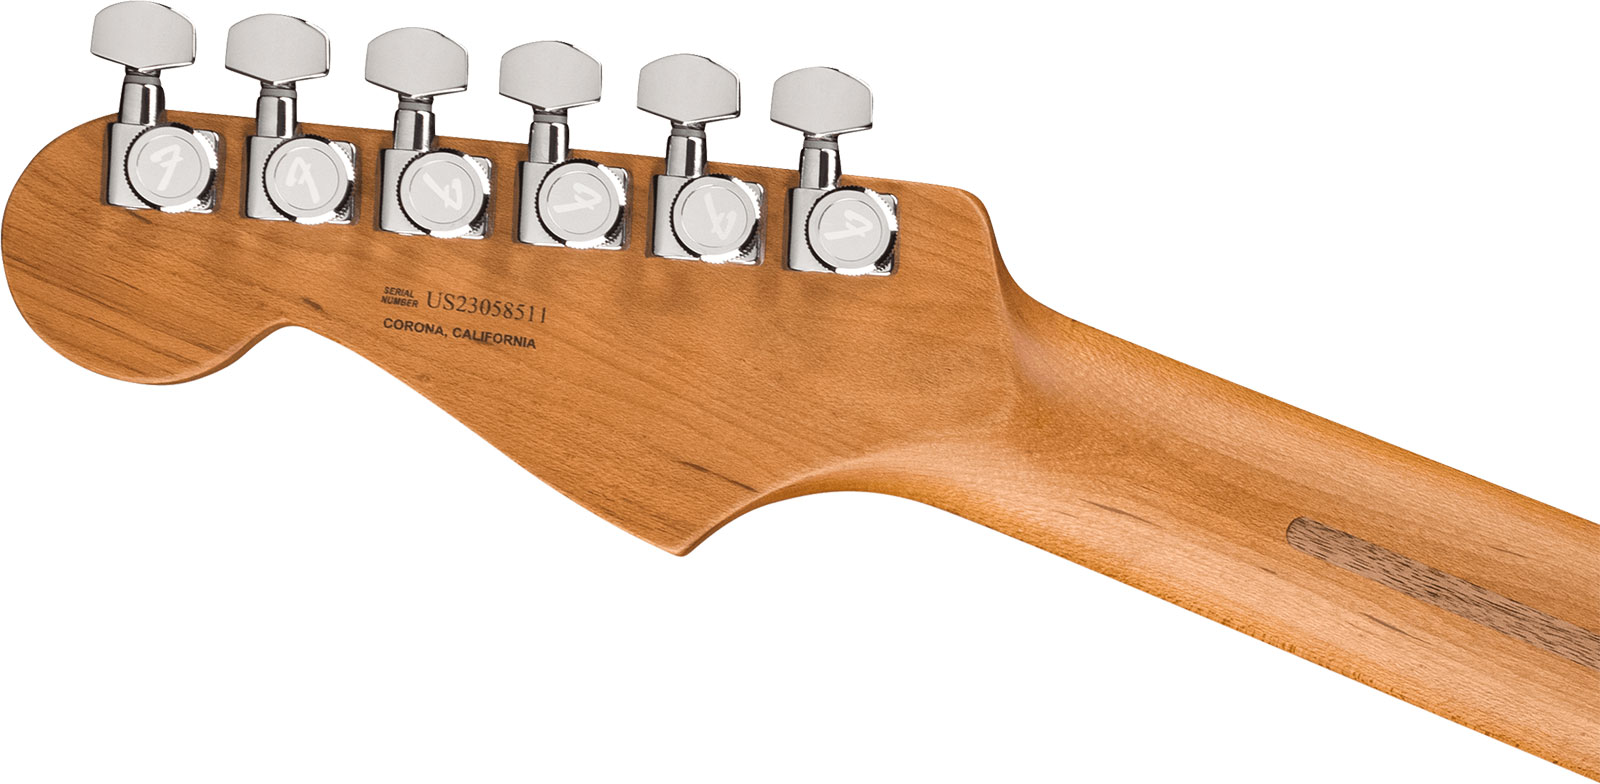 Fender Strat 70th Anniversary American Ultra Ltd Usa Hss Trem Mn - Amethyst - E-Gitarre in Str-Form - Variation 3